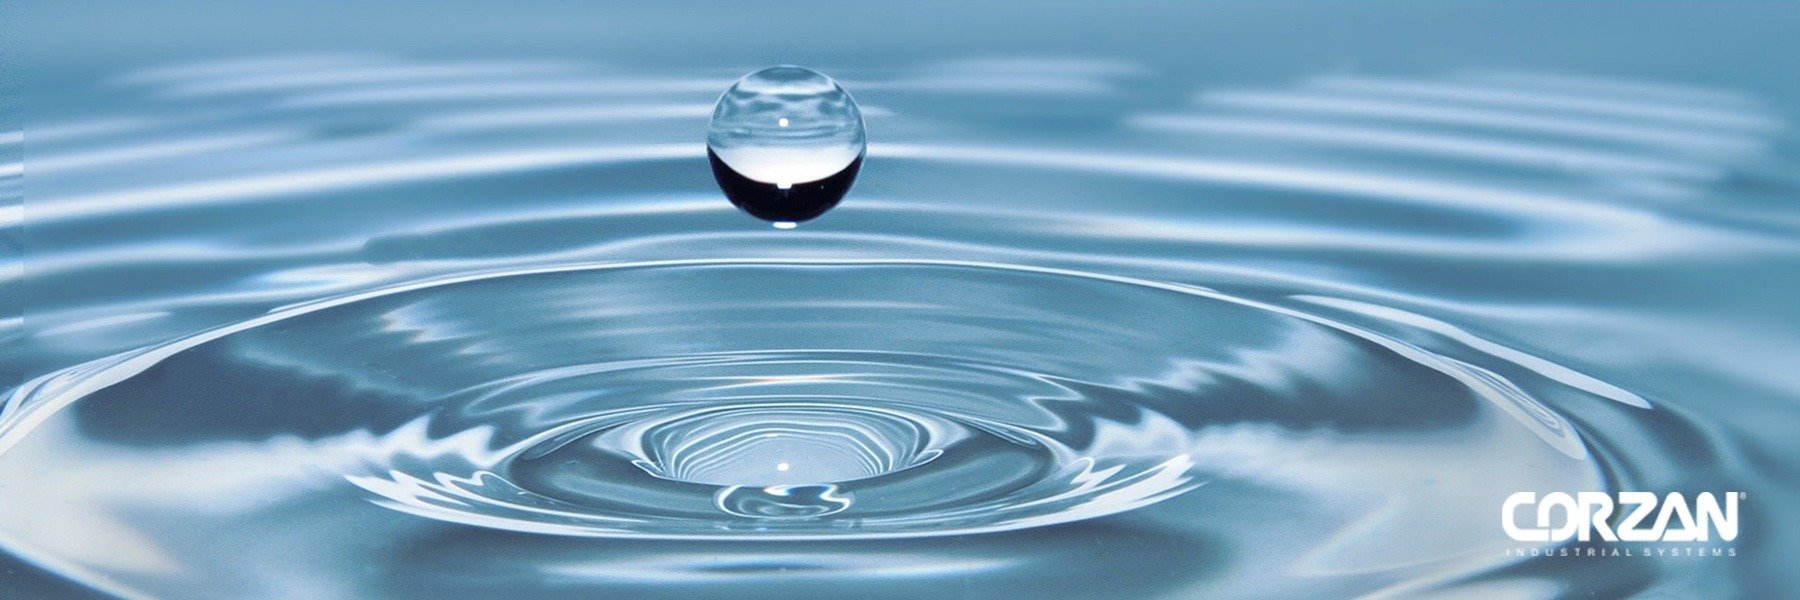 Como o CPVC Corzan® garante a qualidade da água e outros fluidos?